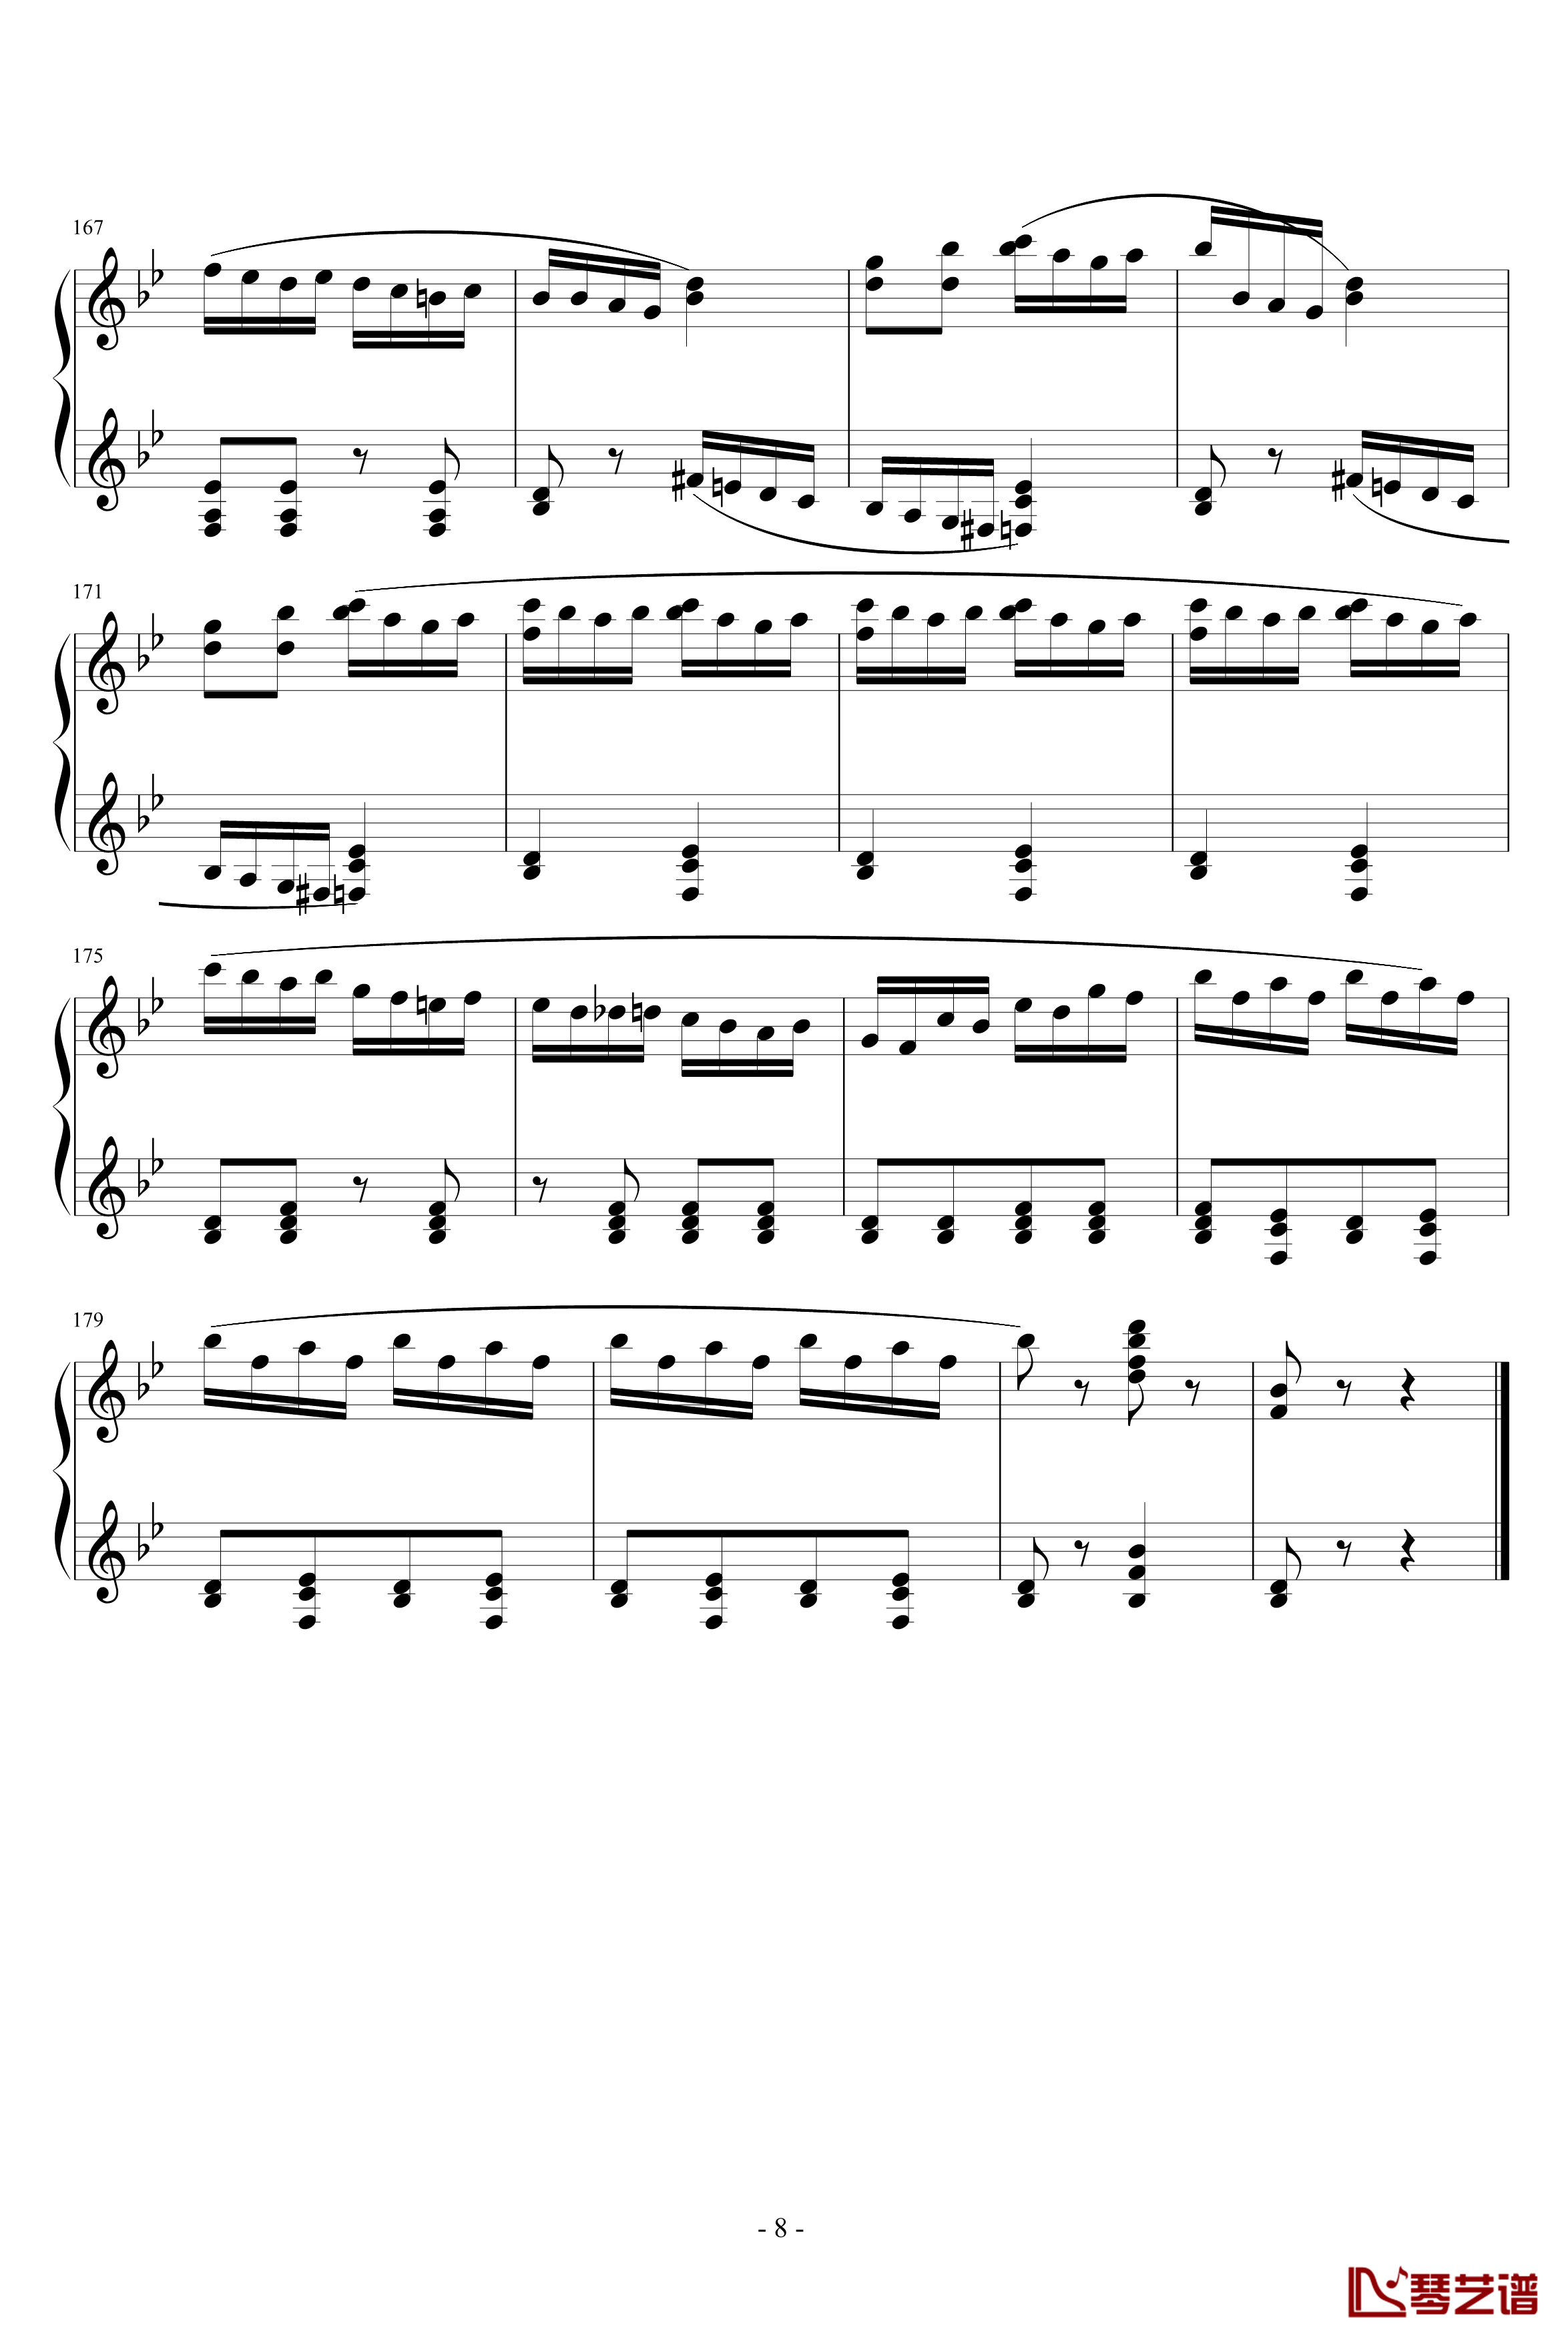 胡桃夹子序曲钢琴谱-柴科夫斯基-Peter Ilyich Tchaikovsky8